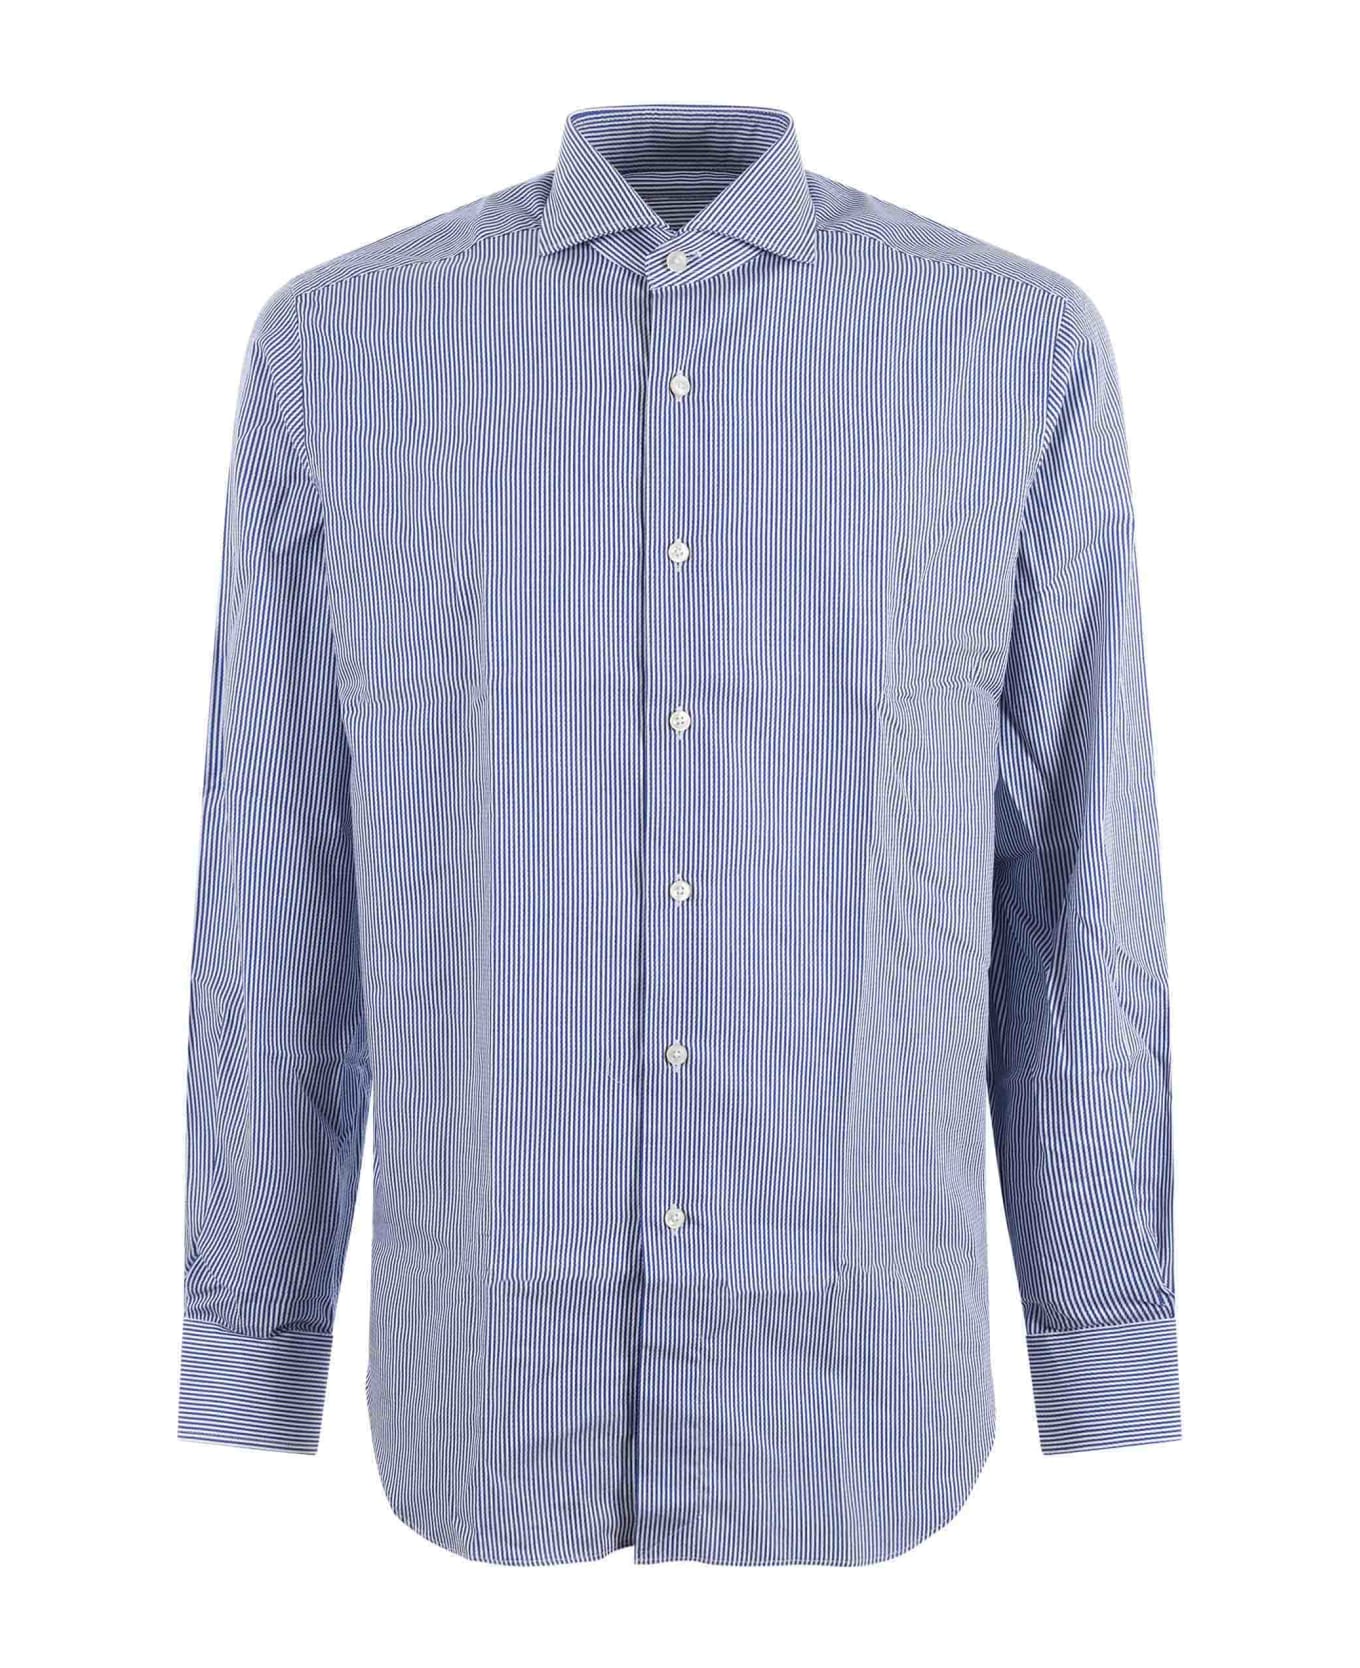 Xacus Shirt - Bianco/blu シャツ